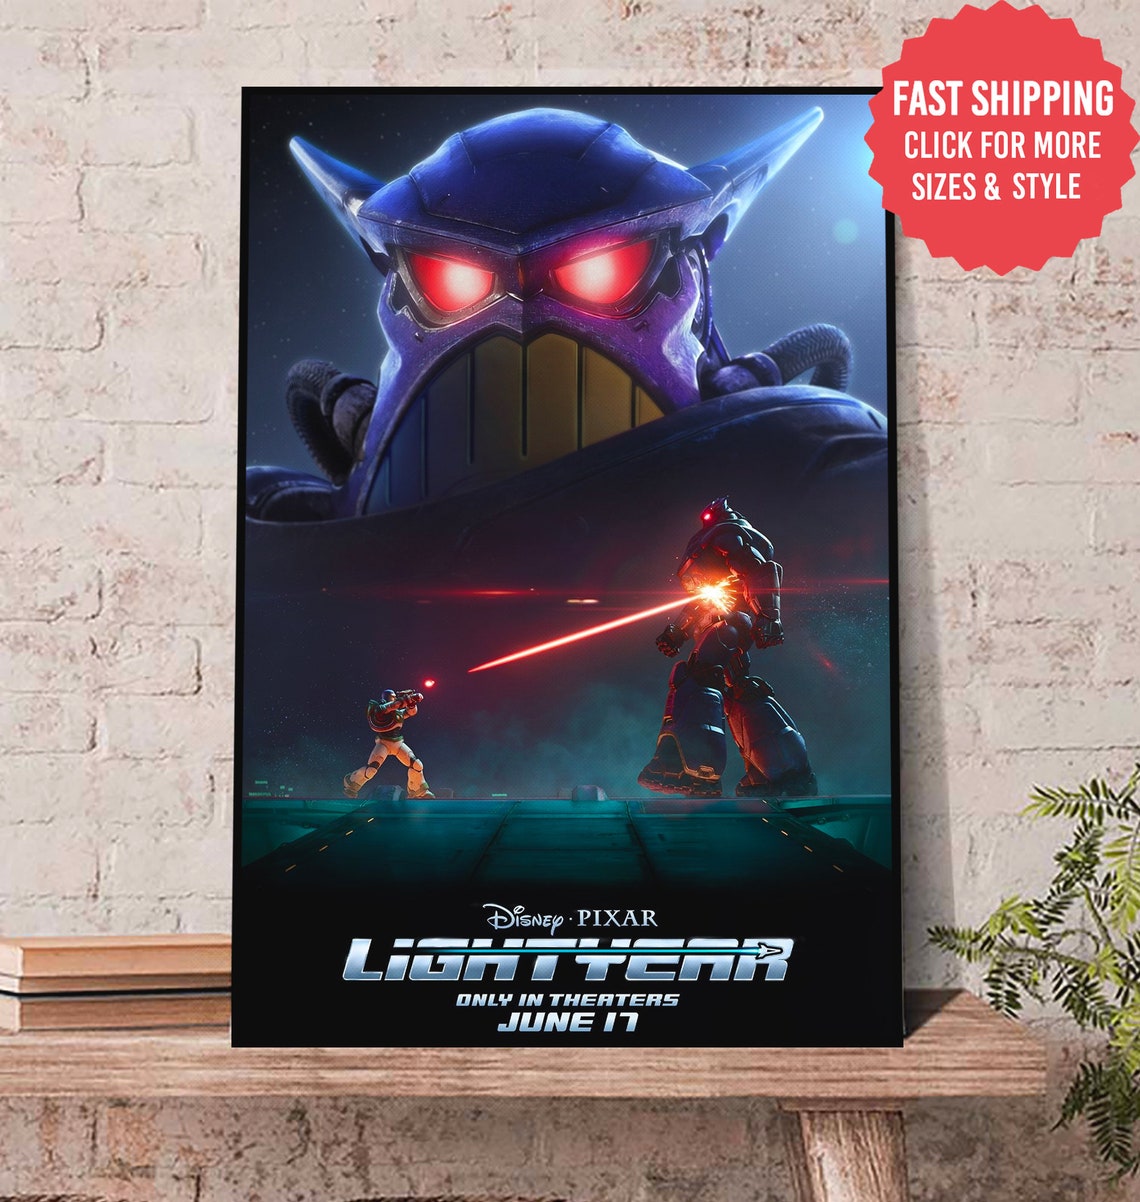 Lightyear Poster, New Lightyear Poster, Lightyear Buzz Poster, Lightyear Gift For Fan Poster  inches